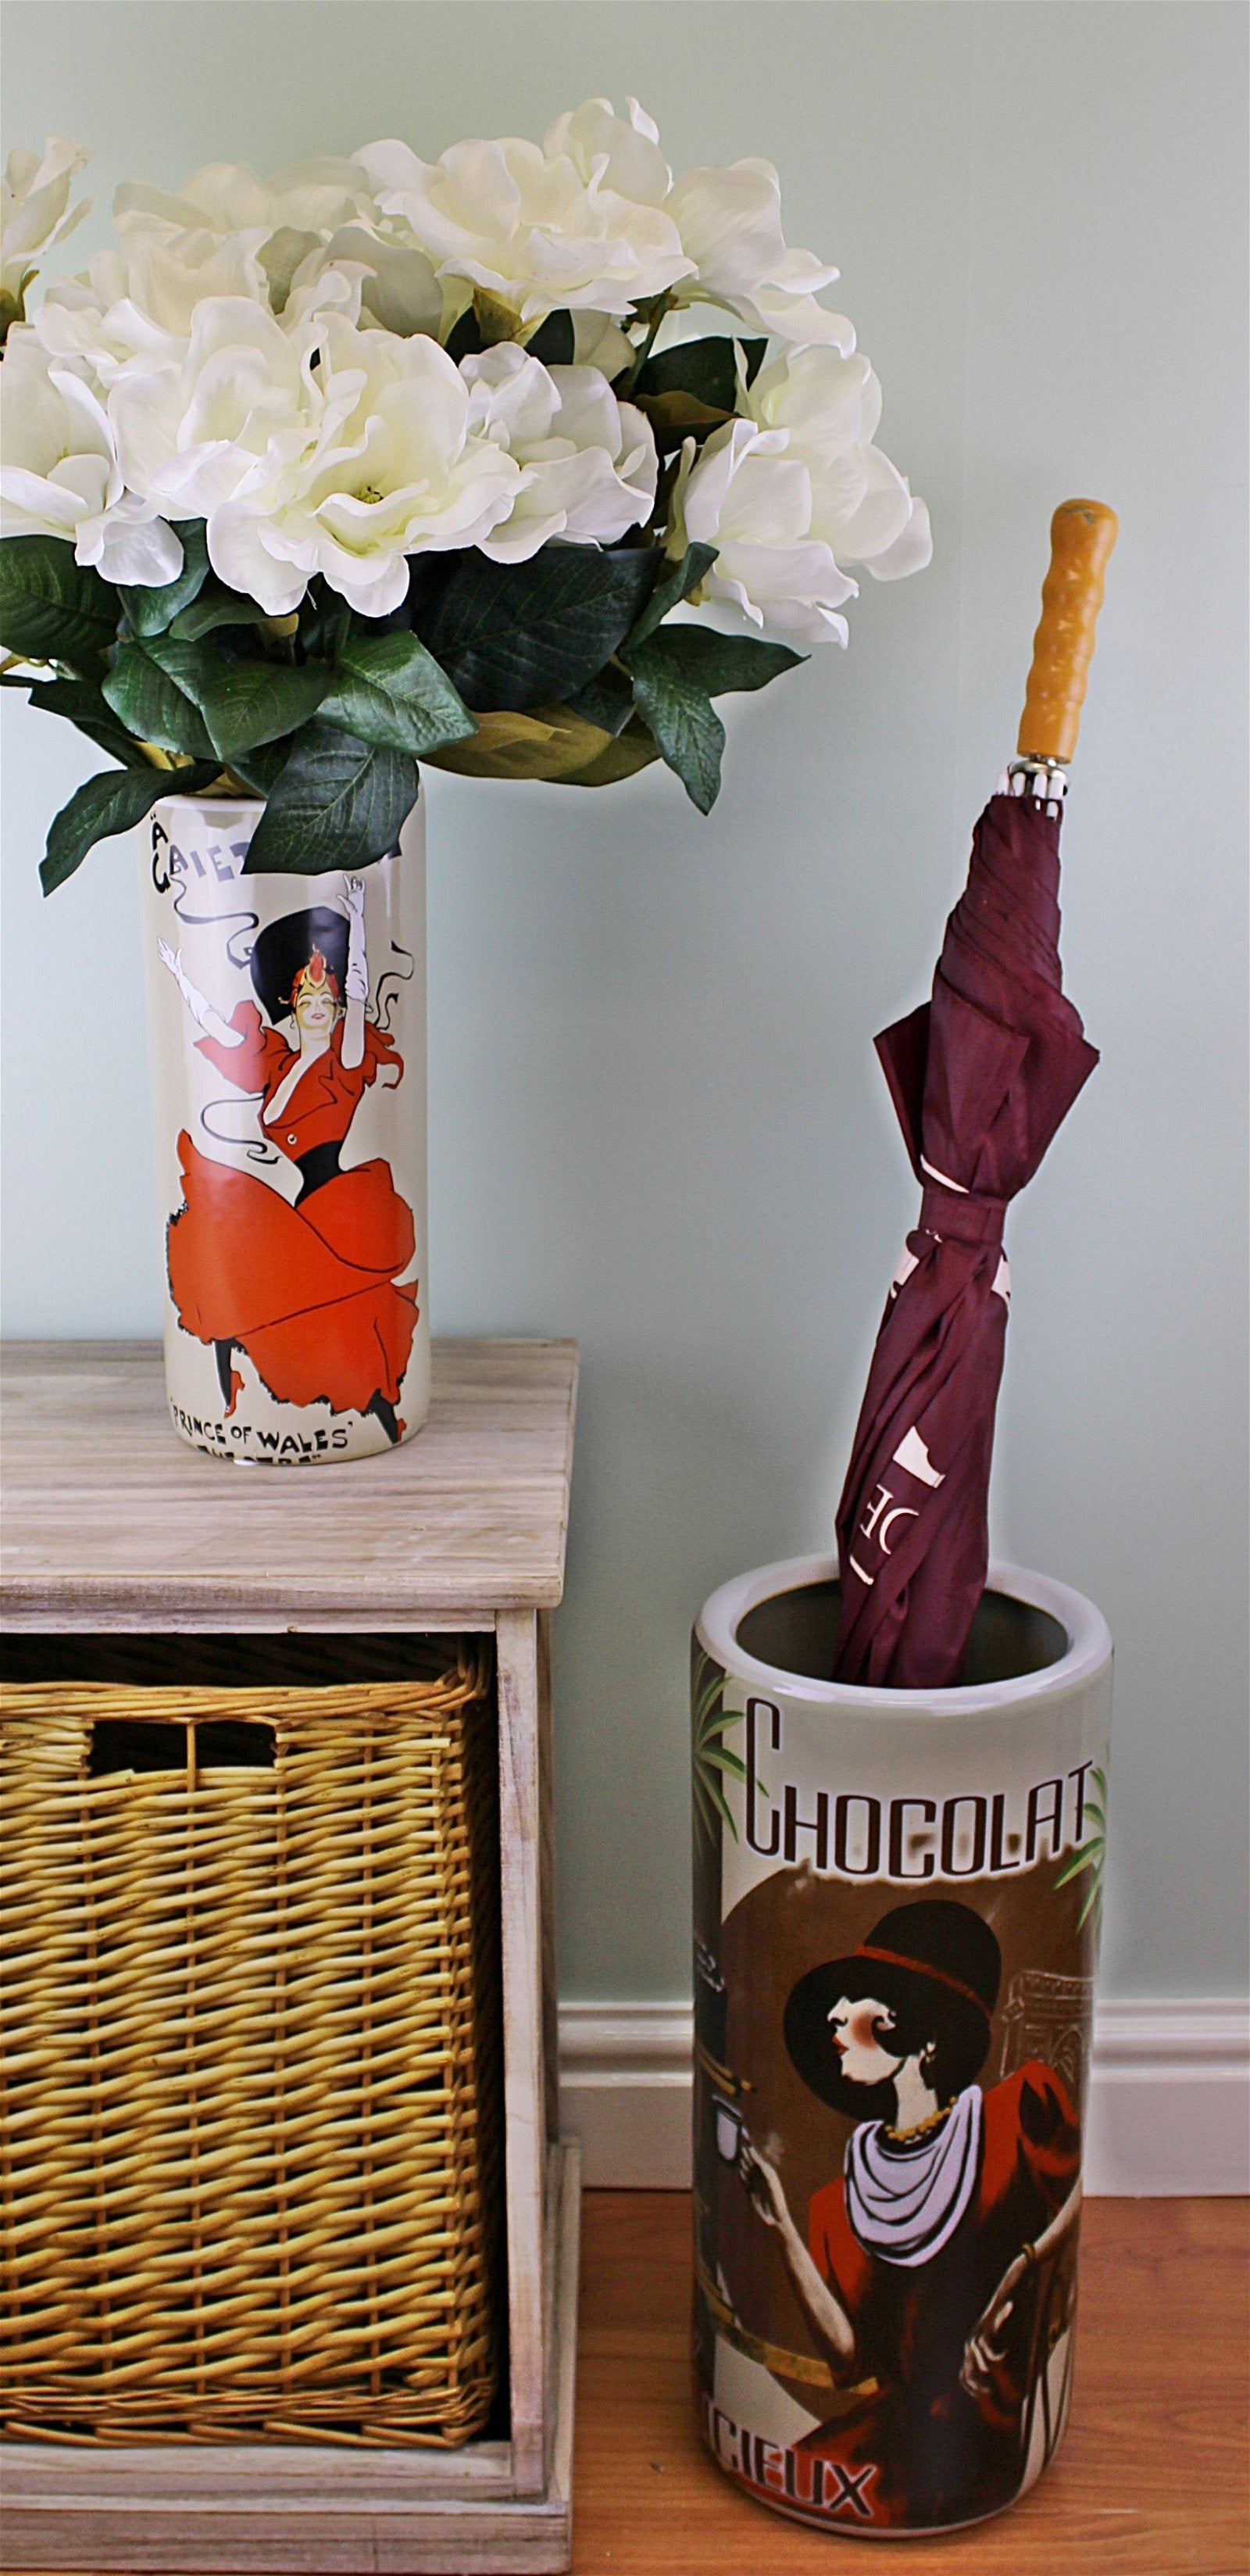 Umbrella Stand, Chocolat Design With Free Vase